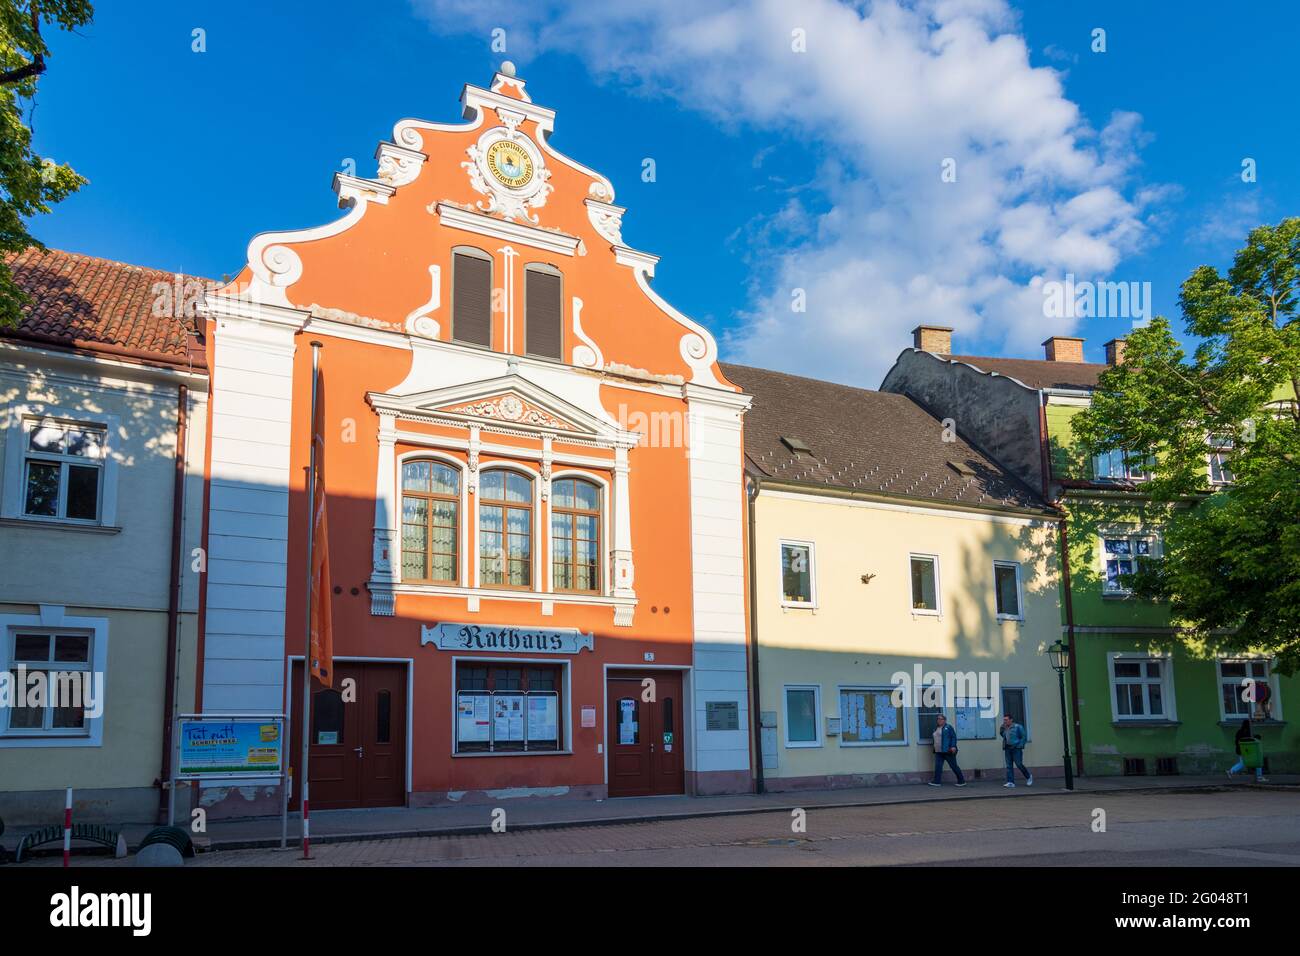 Groß-Enzersdorf: Town Hall in Donau, Niederösterreich, Lower Austria, Austria Stock Photo